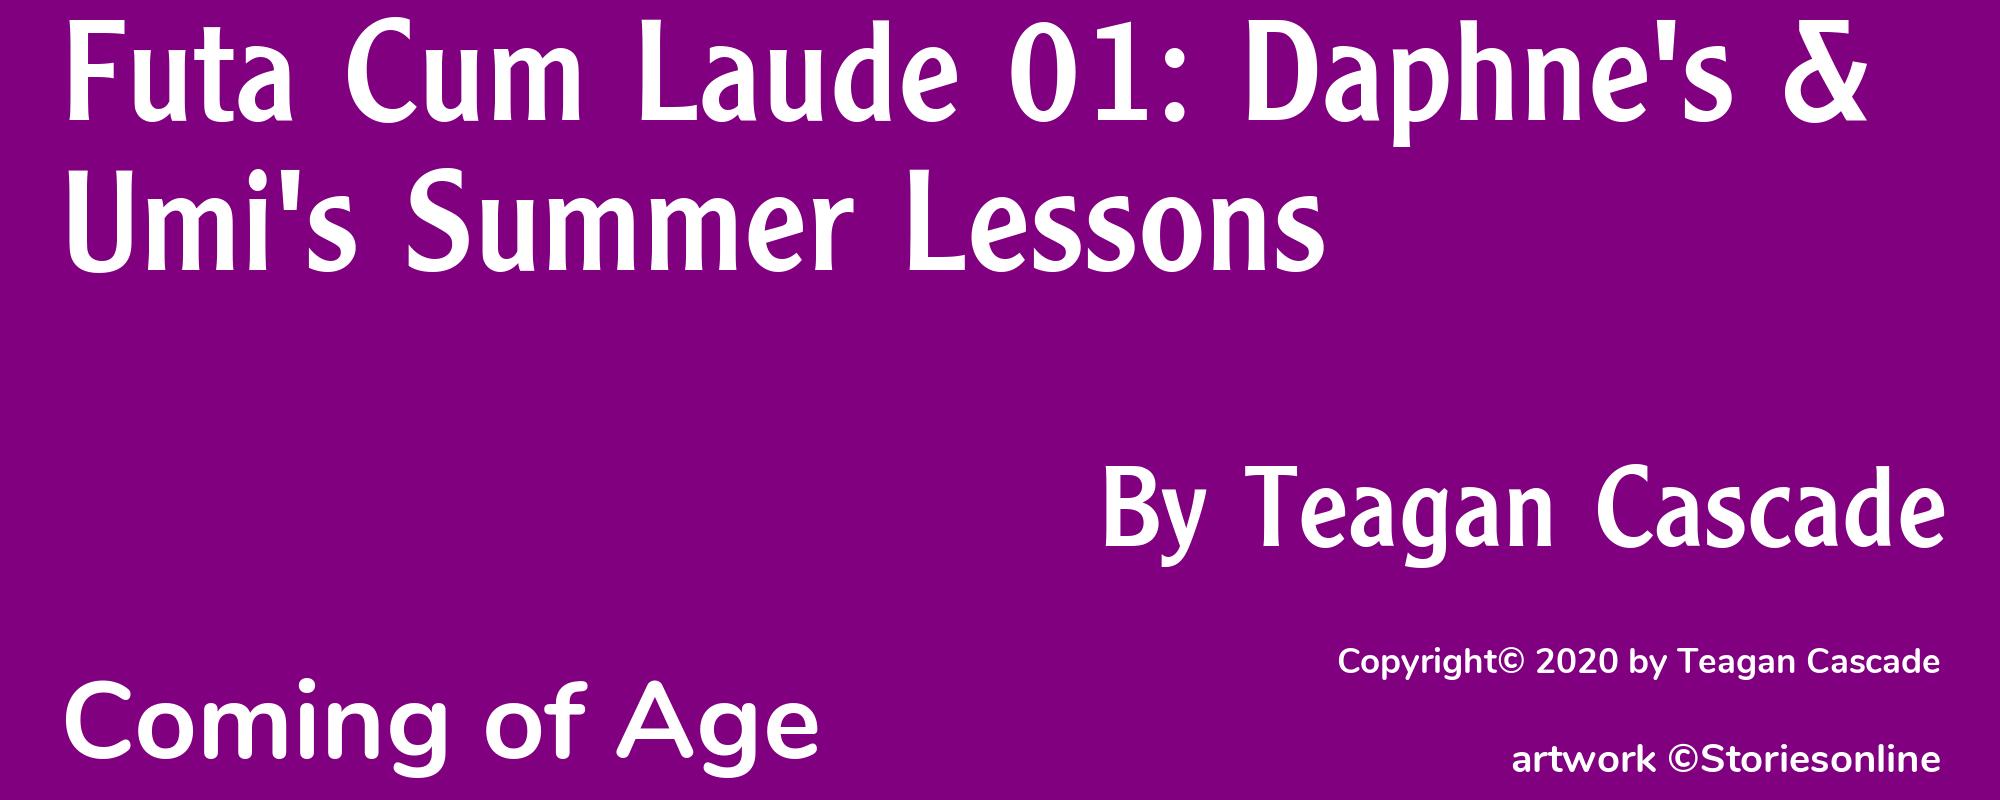 Futa Cum Laude 01: Daphne's & Umi's Summer Lessons - Cover